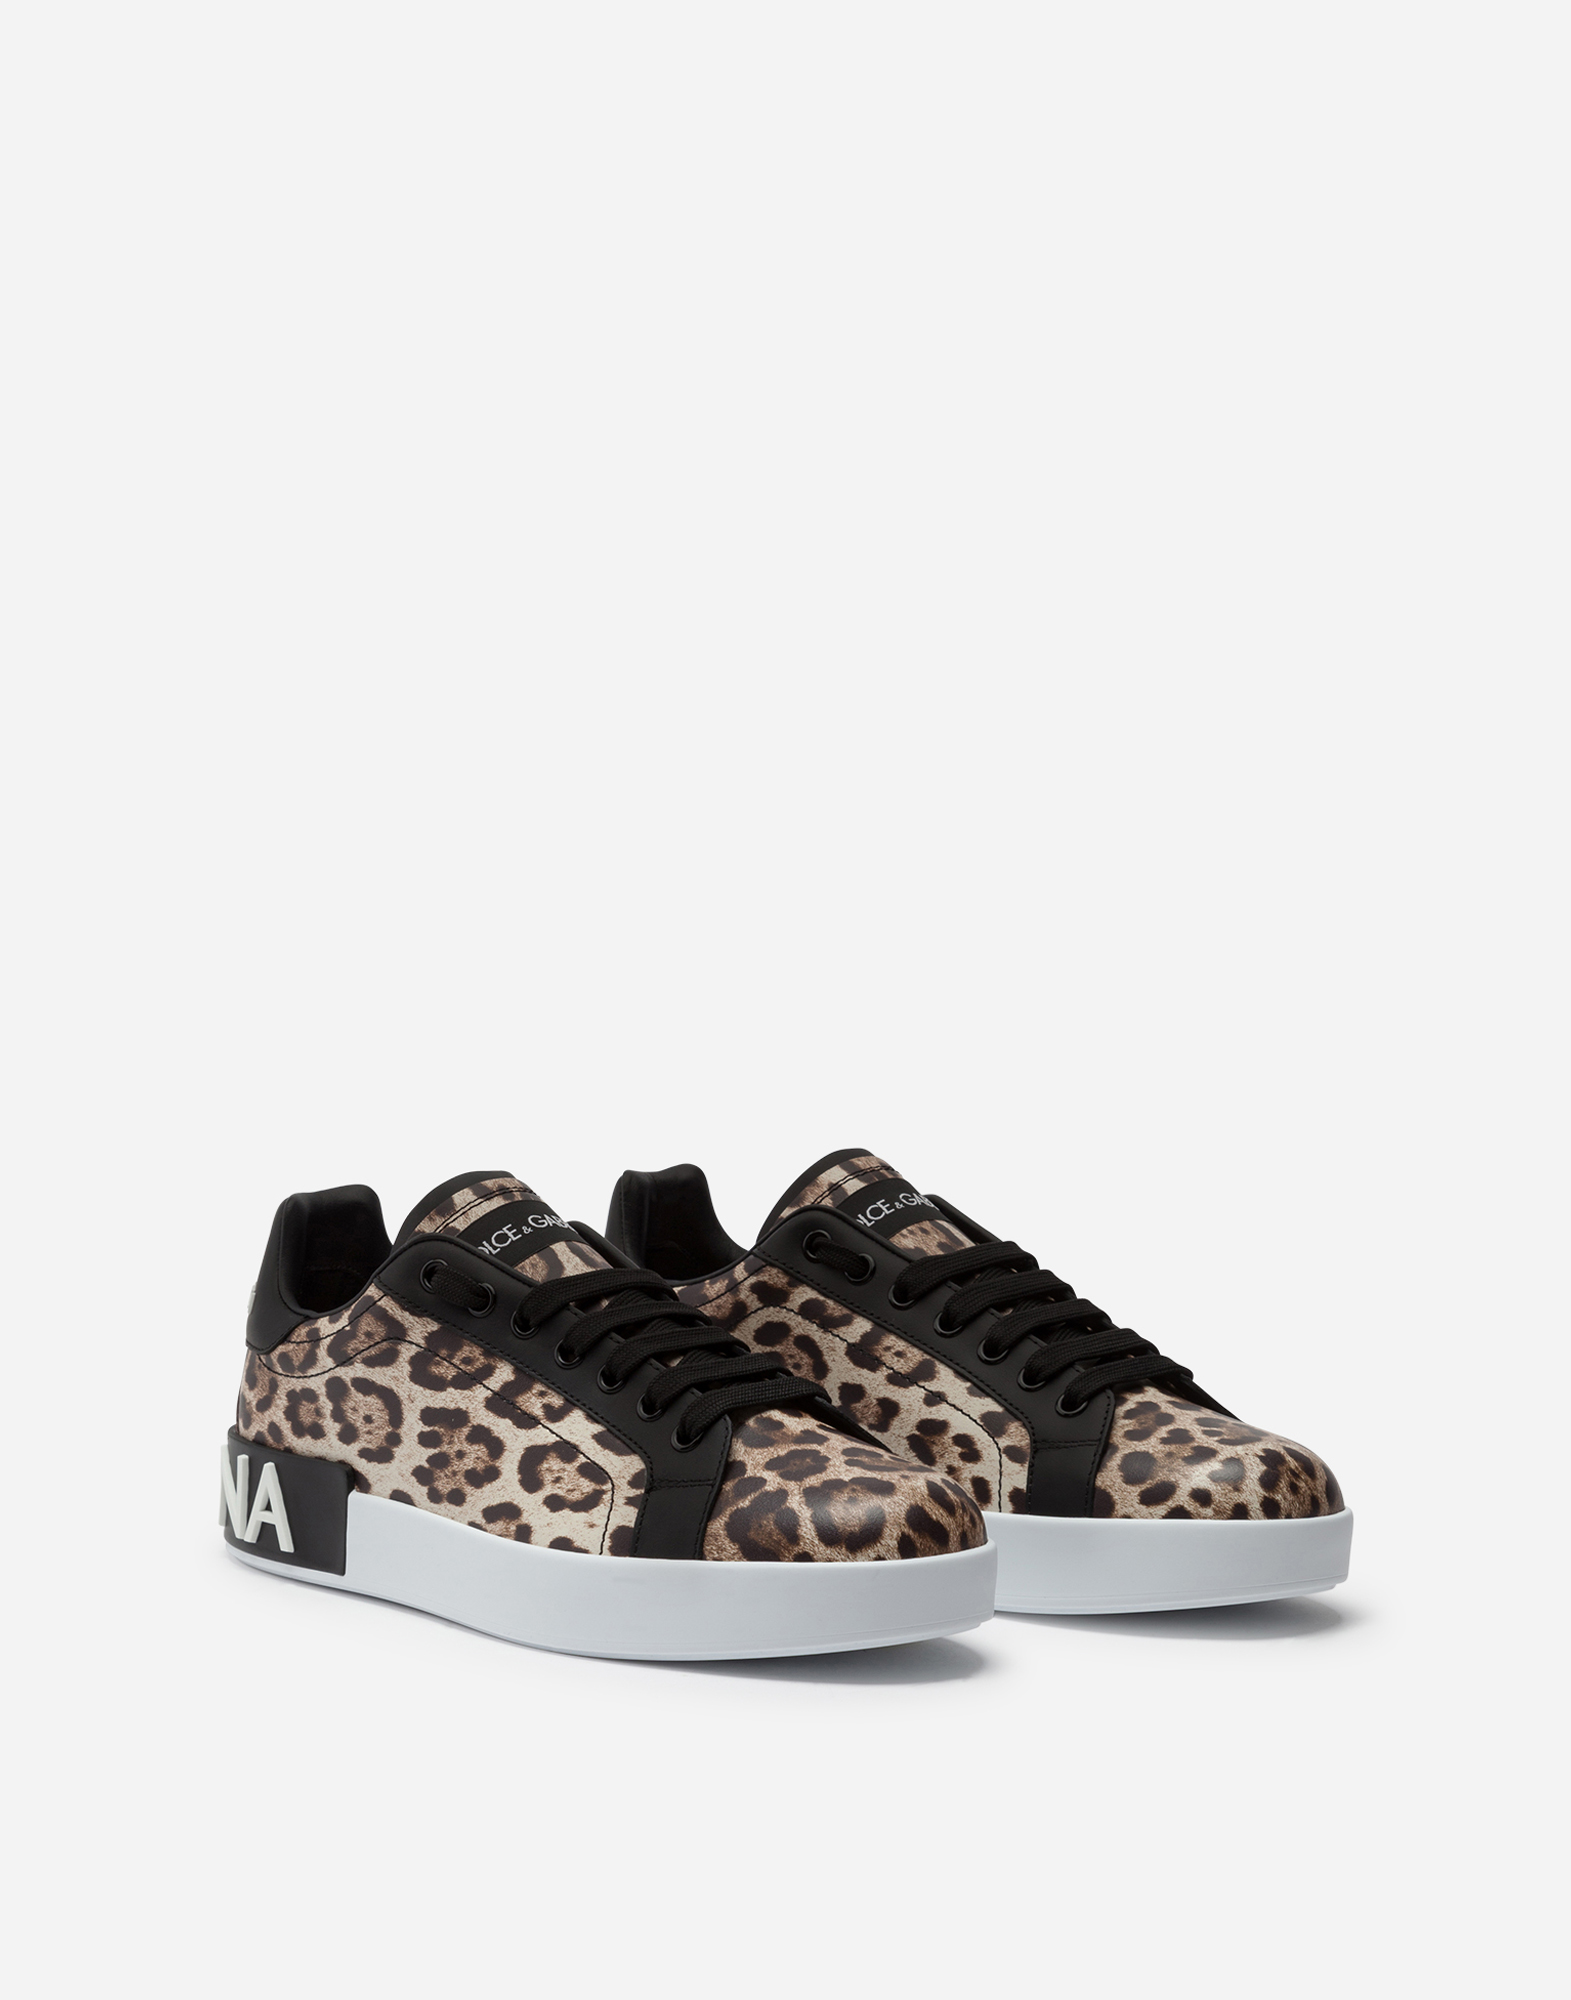 dolce & gabbana leopard sneakers